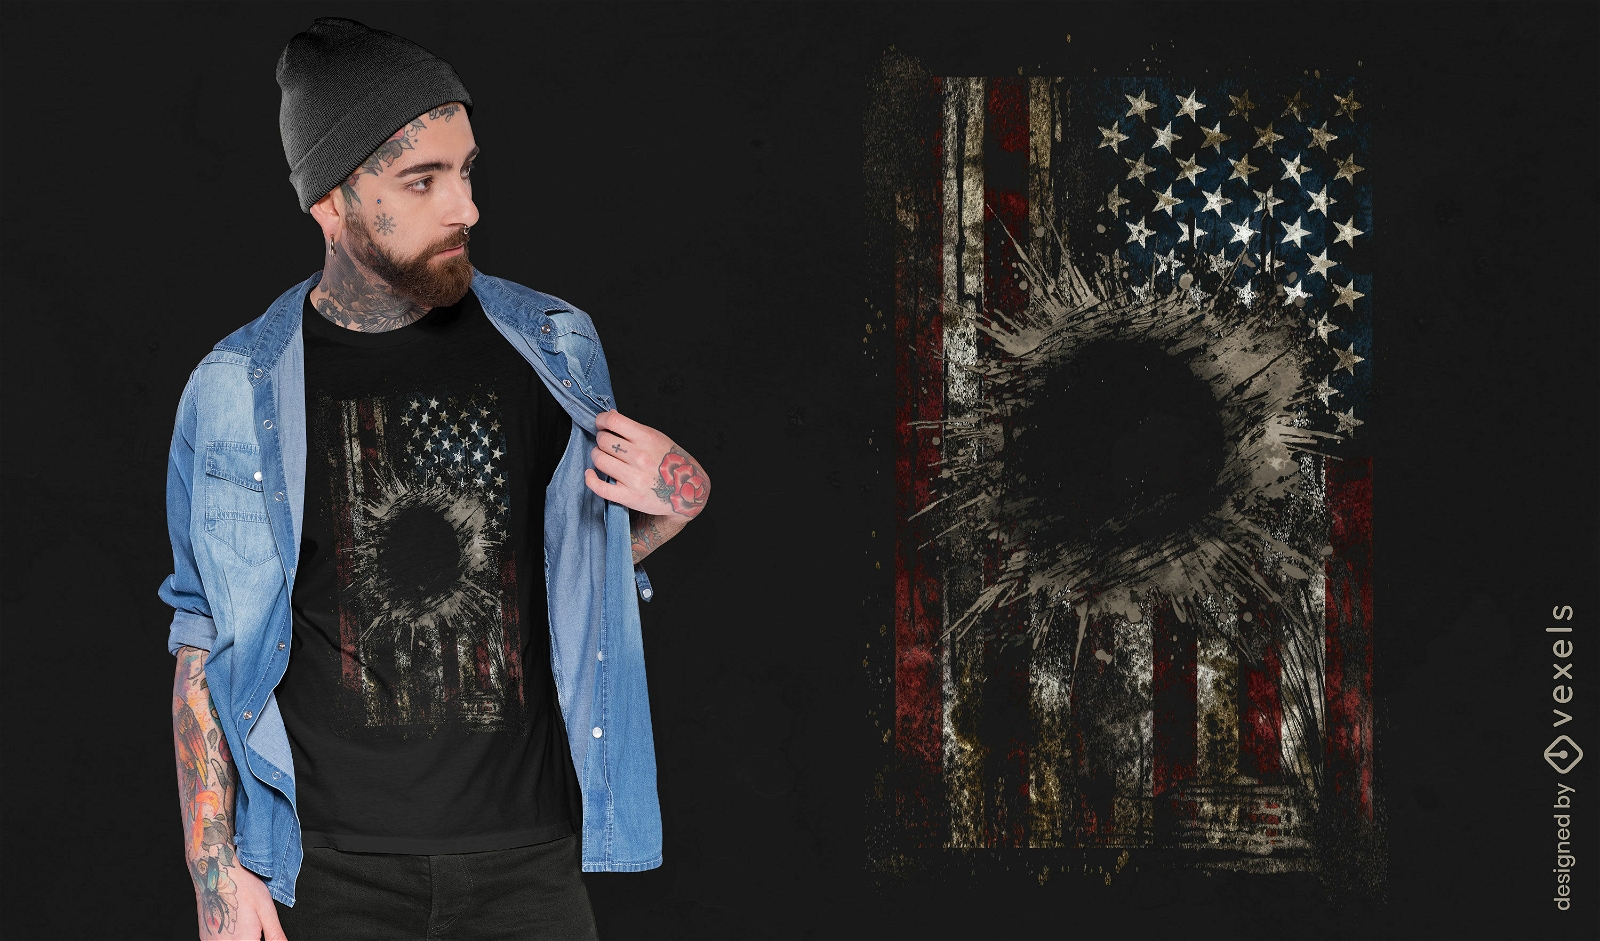 Design de camiseta grunge com explos?o da bandeira americana